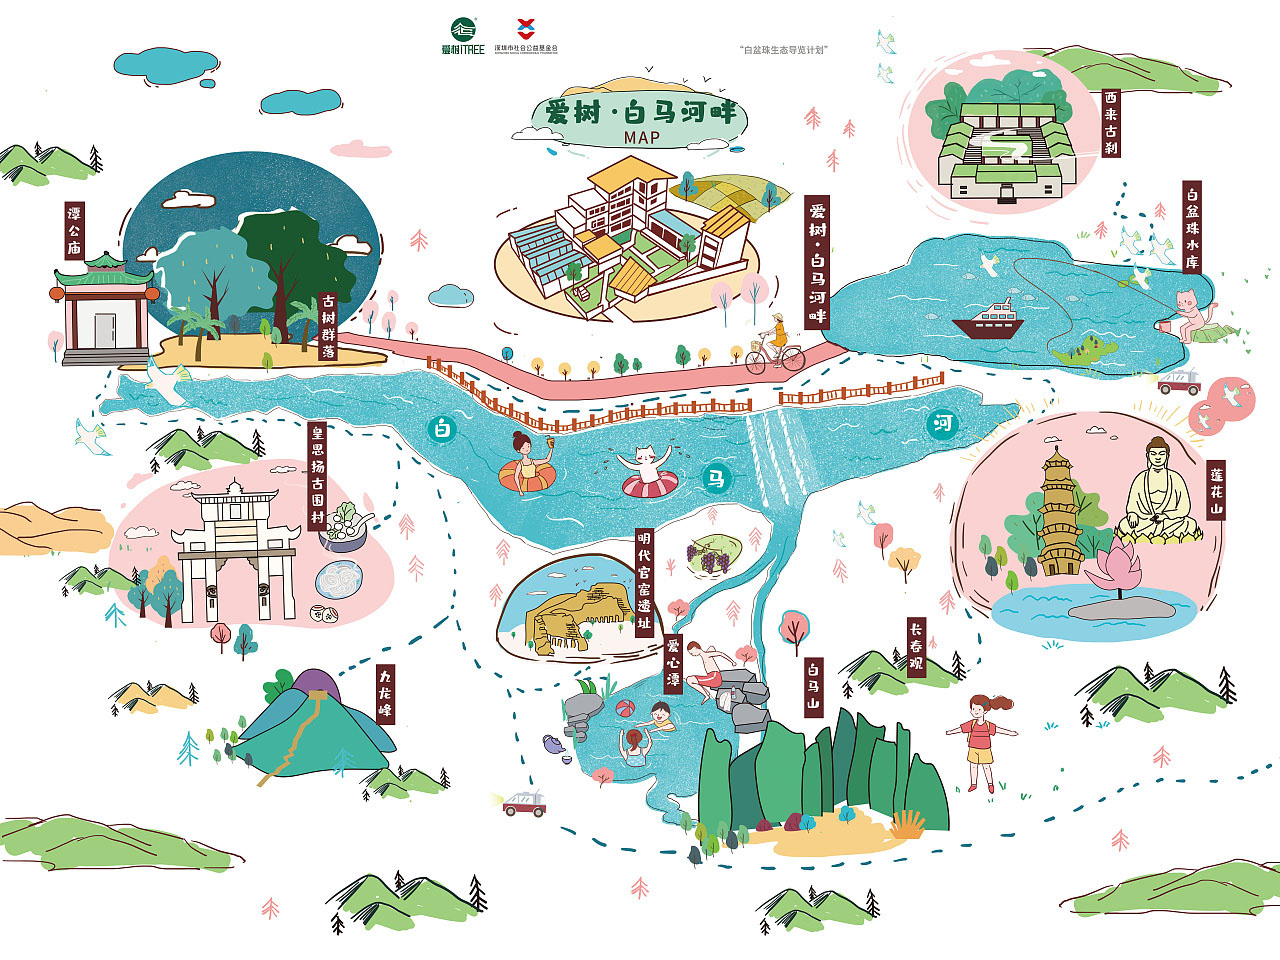 扬州语音导览让景区游览更加智能